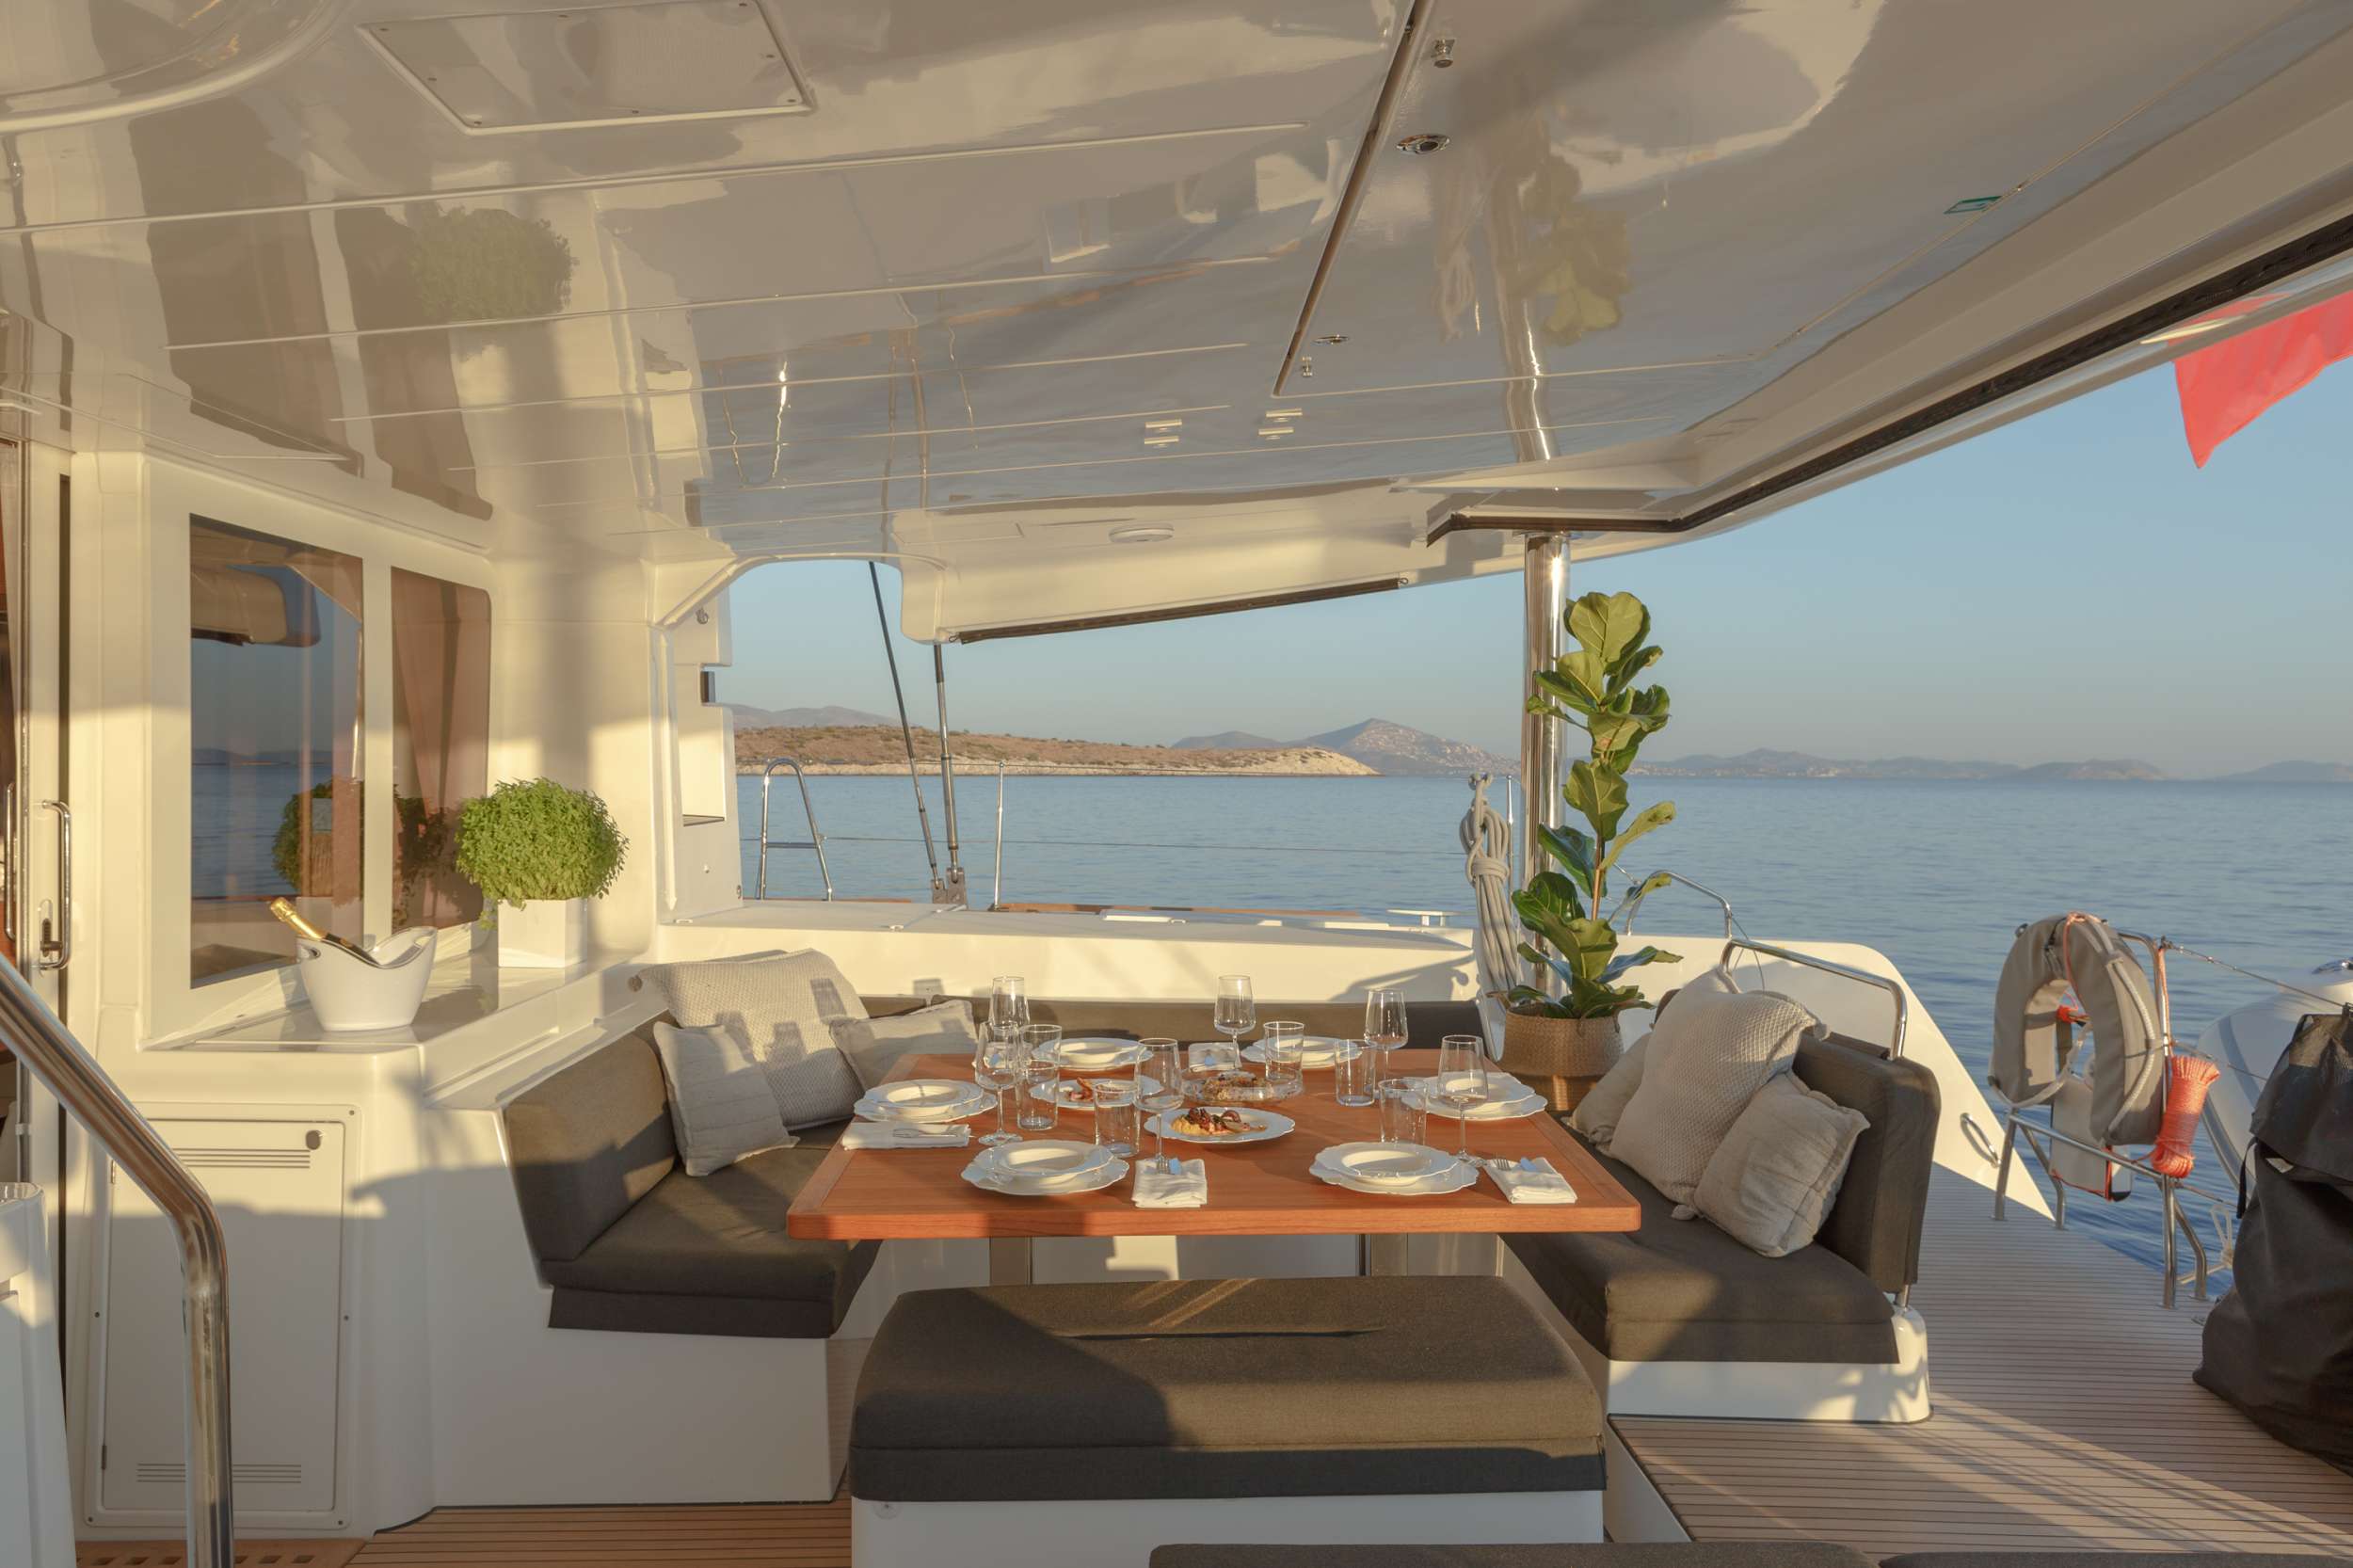 ONEIDA - Yacht Charter Zakynthos & Boat hire in Greece 4